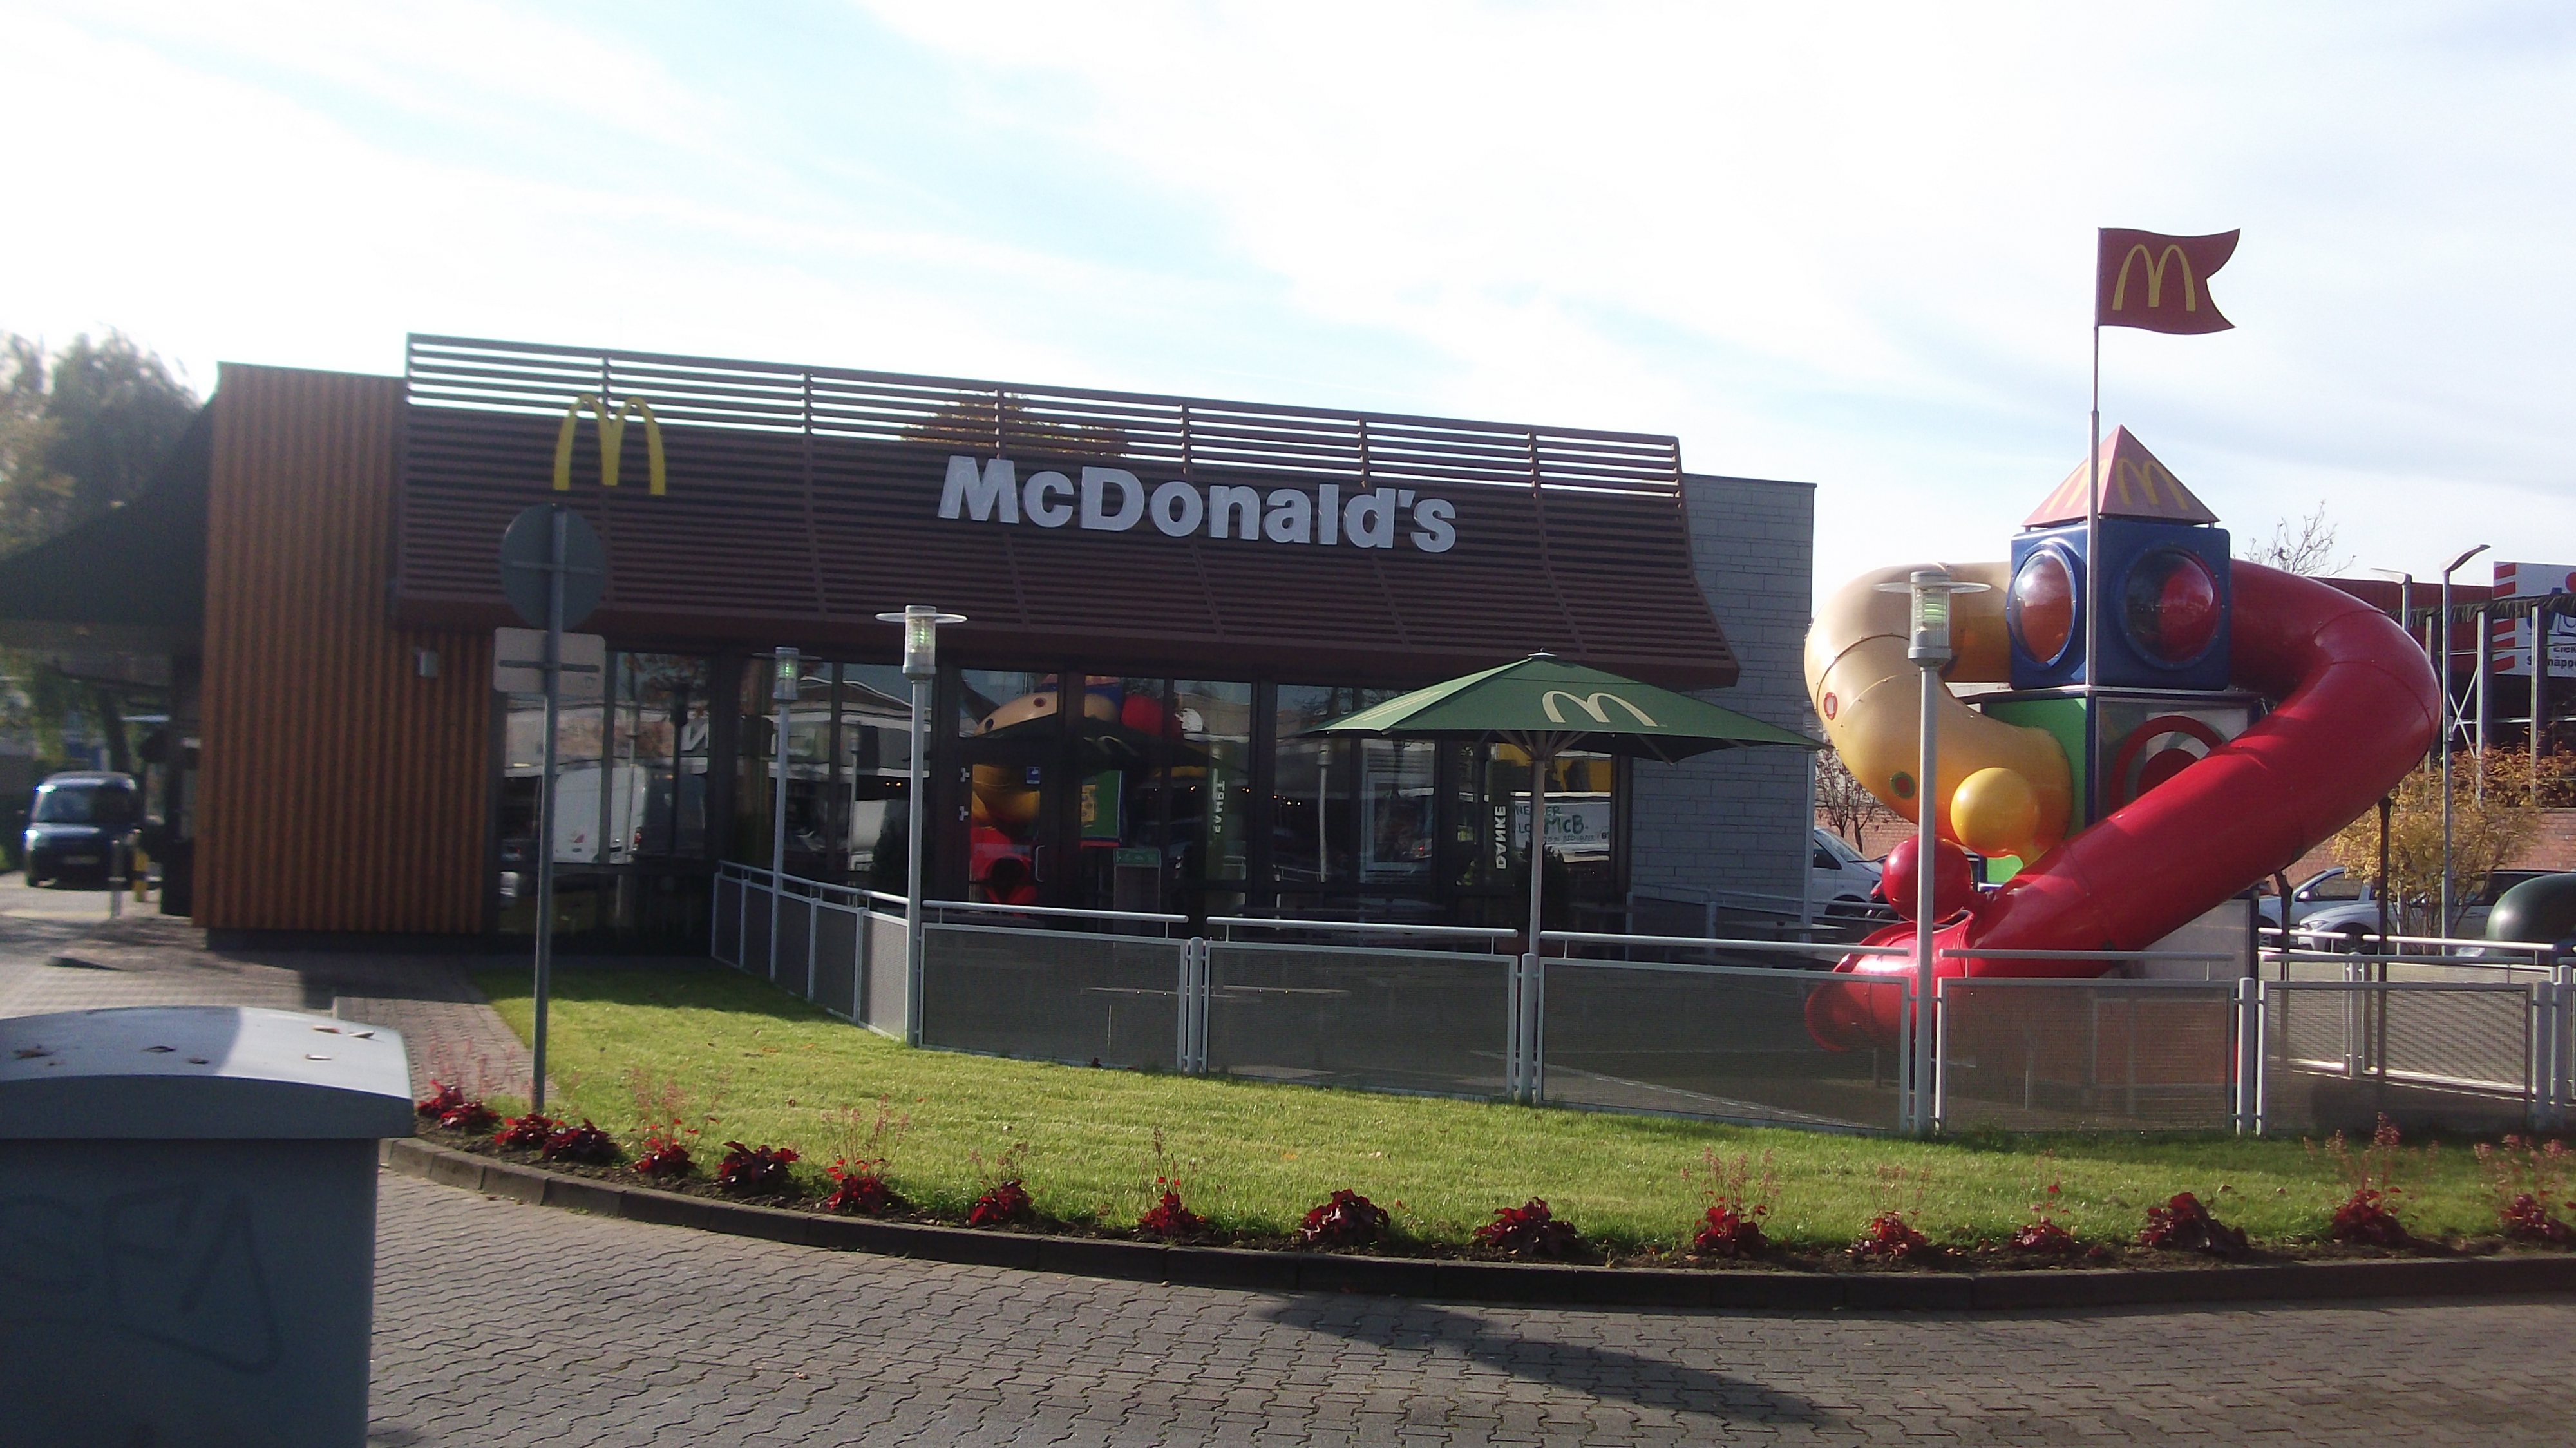 letzter Blick zurück... auch wenn's schwer fällt - McDonald's Königsbergerstraße Düsseldorf